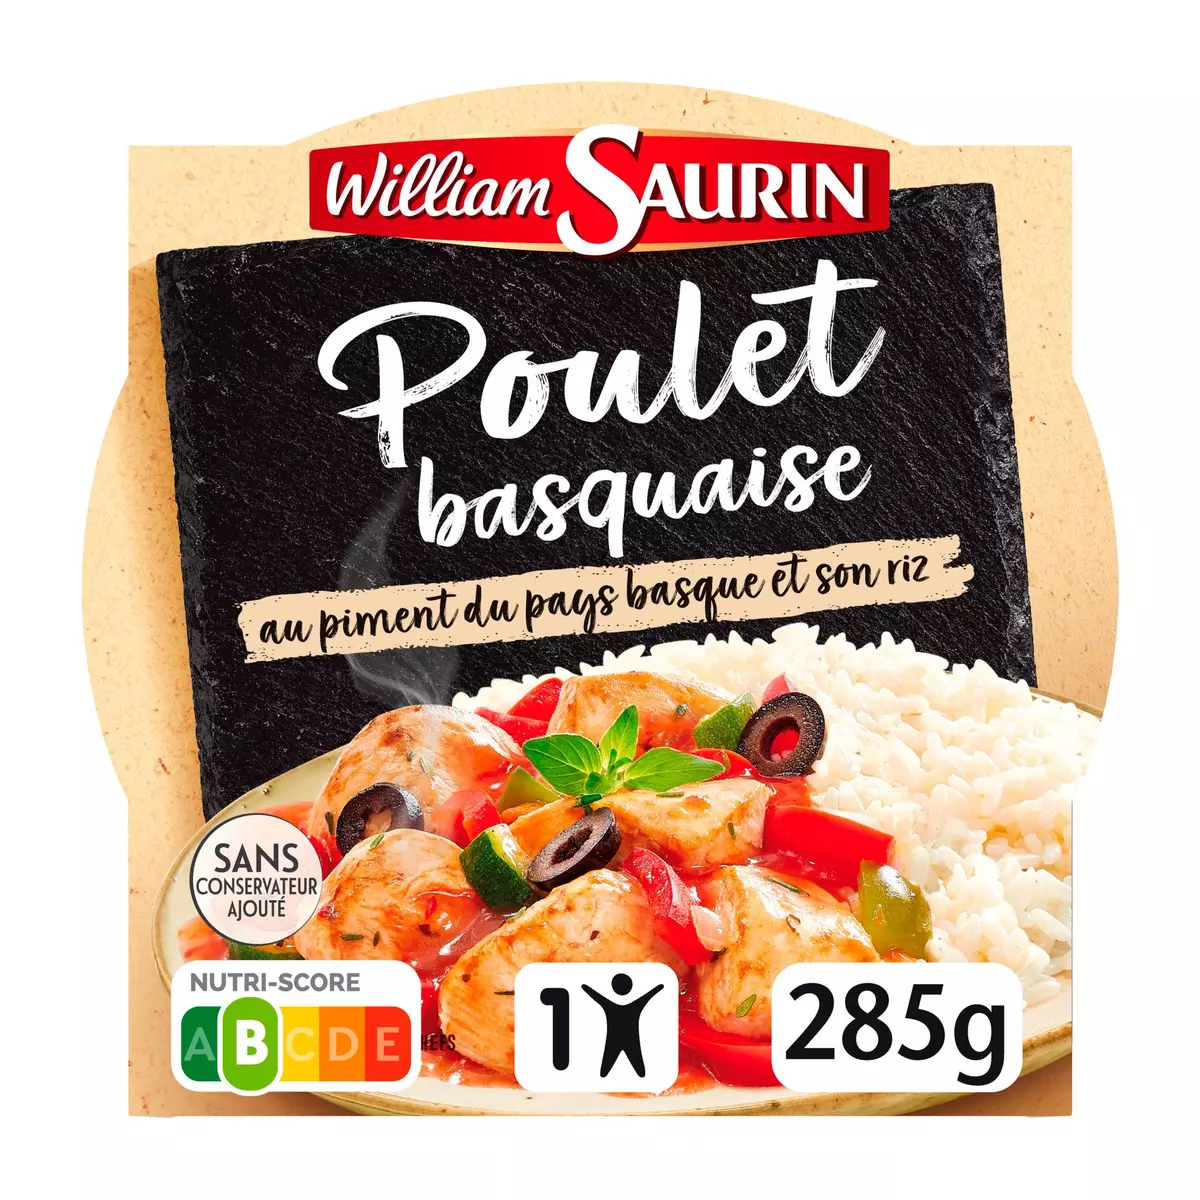 WILLIAM SAURIN Poulet basquaise au piment du pays basque et son riz barquette 1 portion 285g